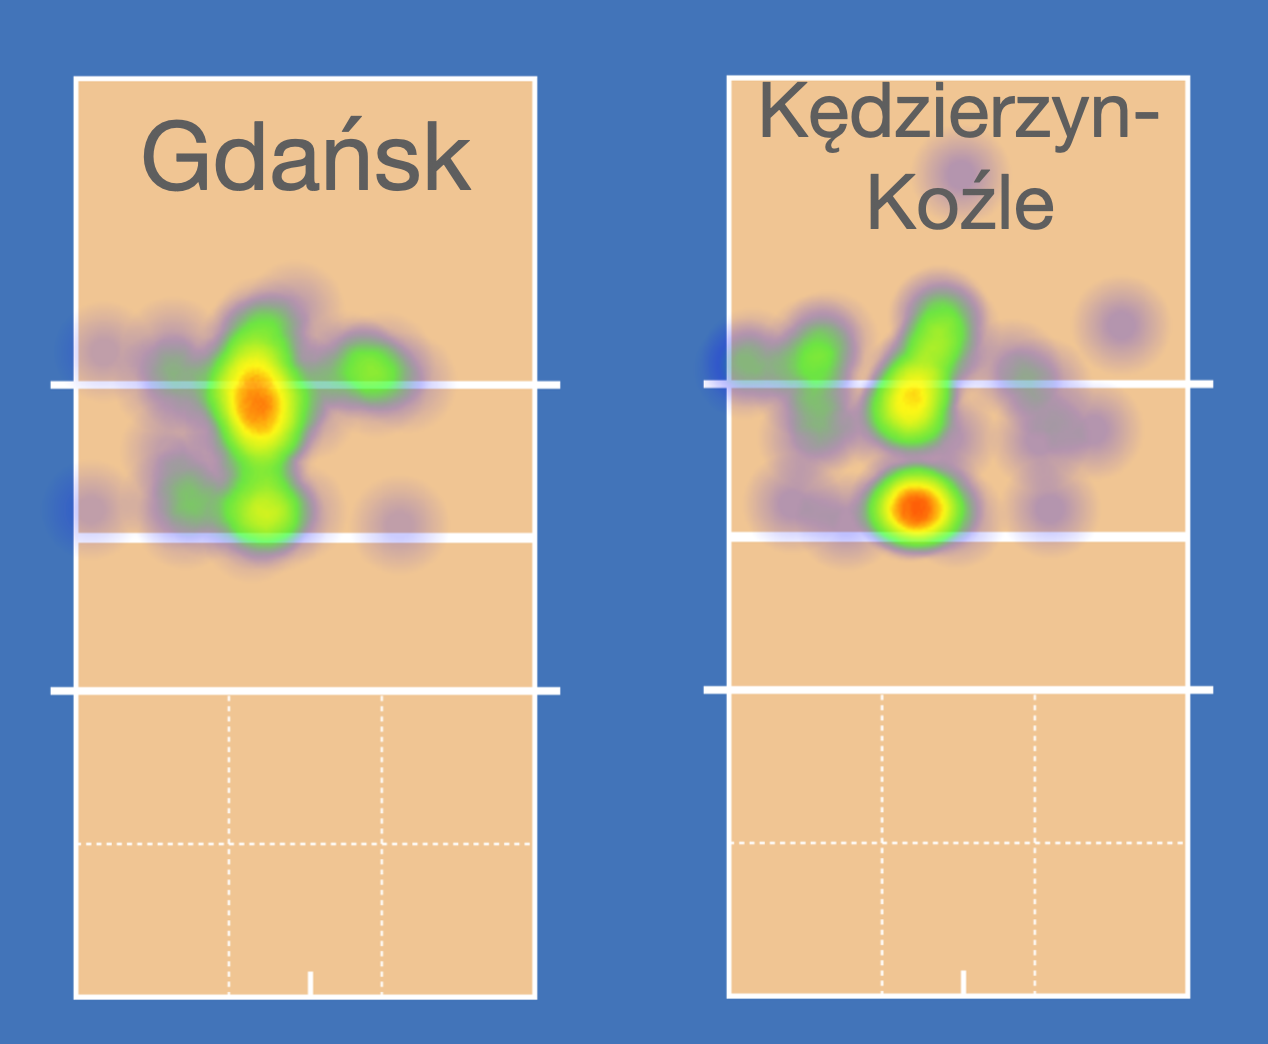 Trefl Gdańsk vs GA ZAKSA Kędzierzyn-Koźle